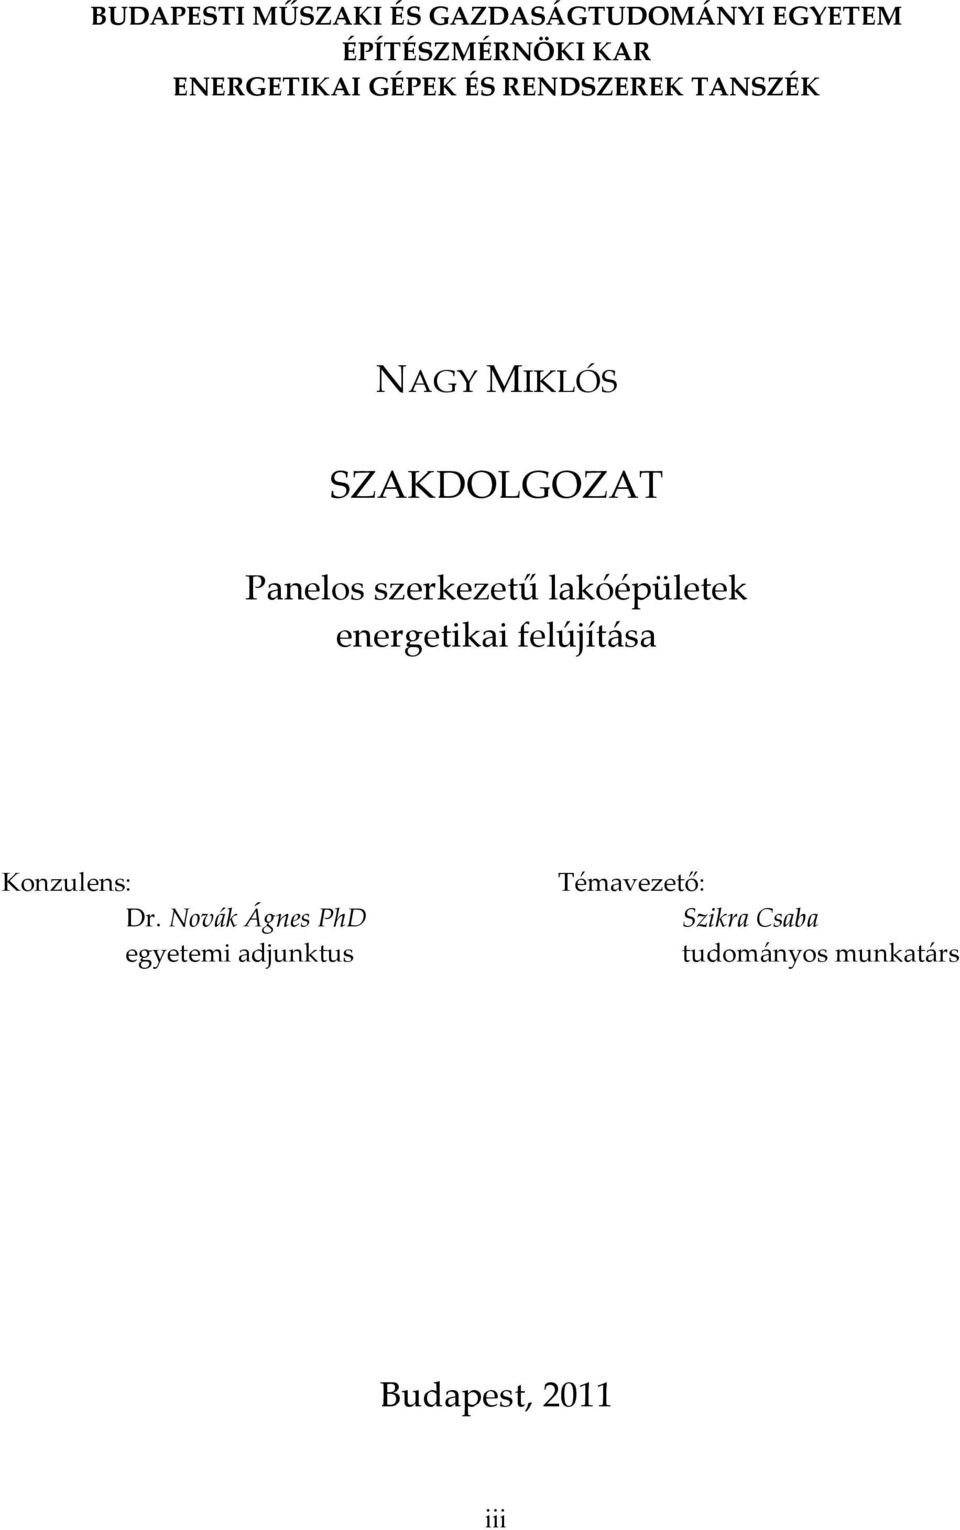 NAGY MIKLÓS SZAKDOLGOZAT - PDF Ingyenes letöltés